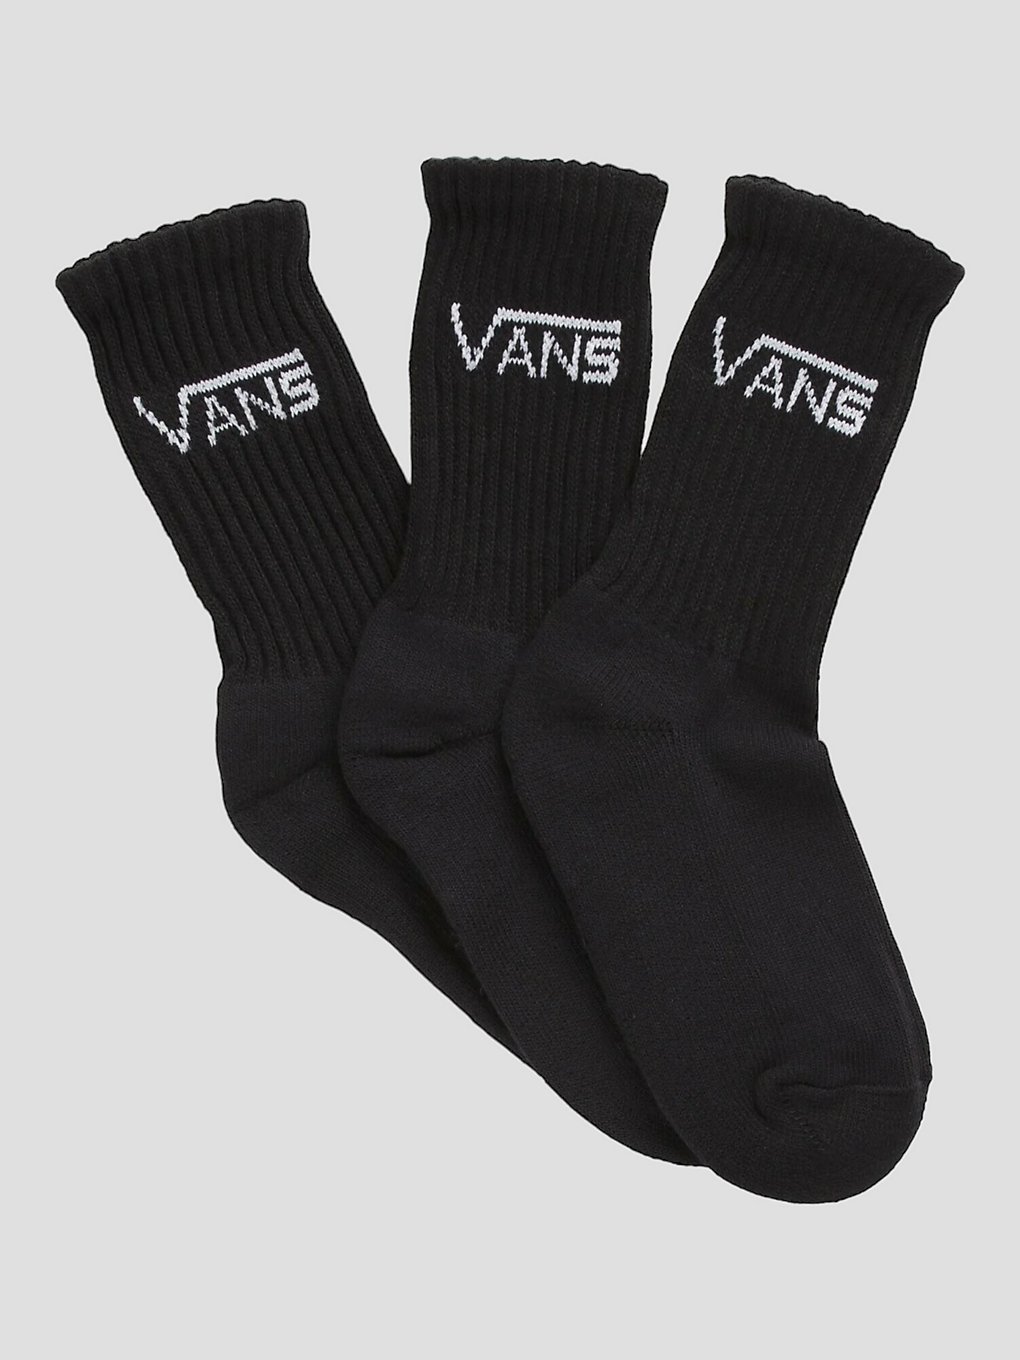 Vans Classic Crew (10-13.5) Socken rox black kaufen